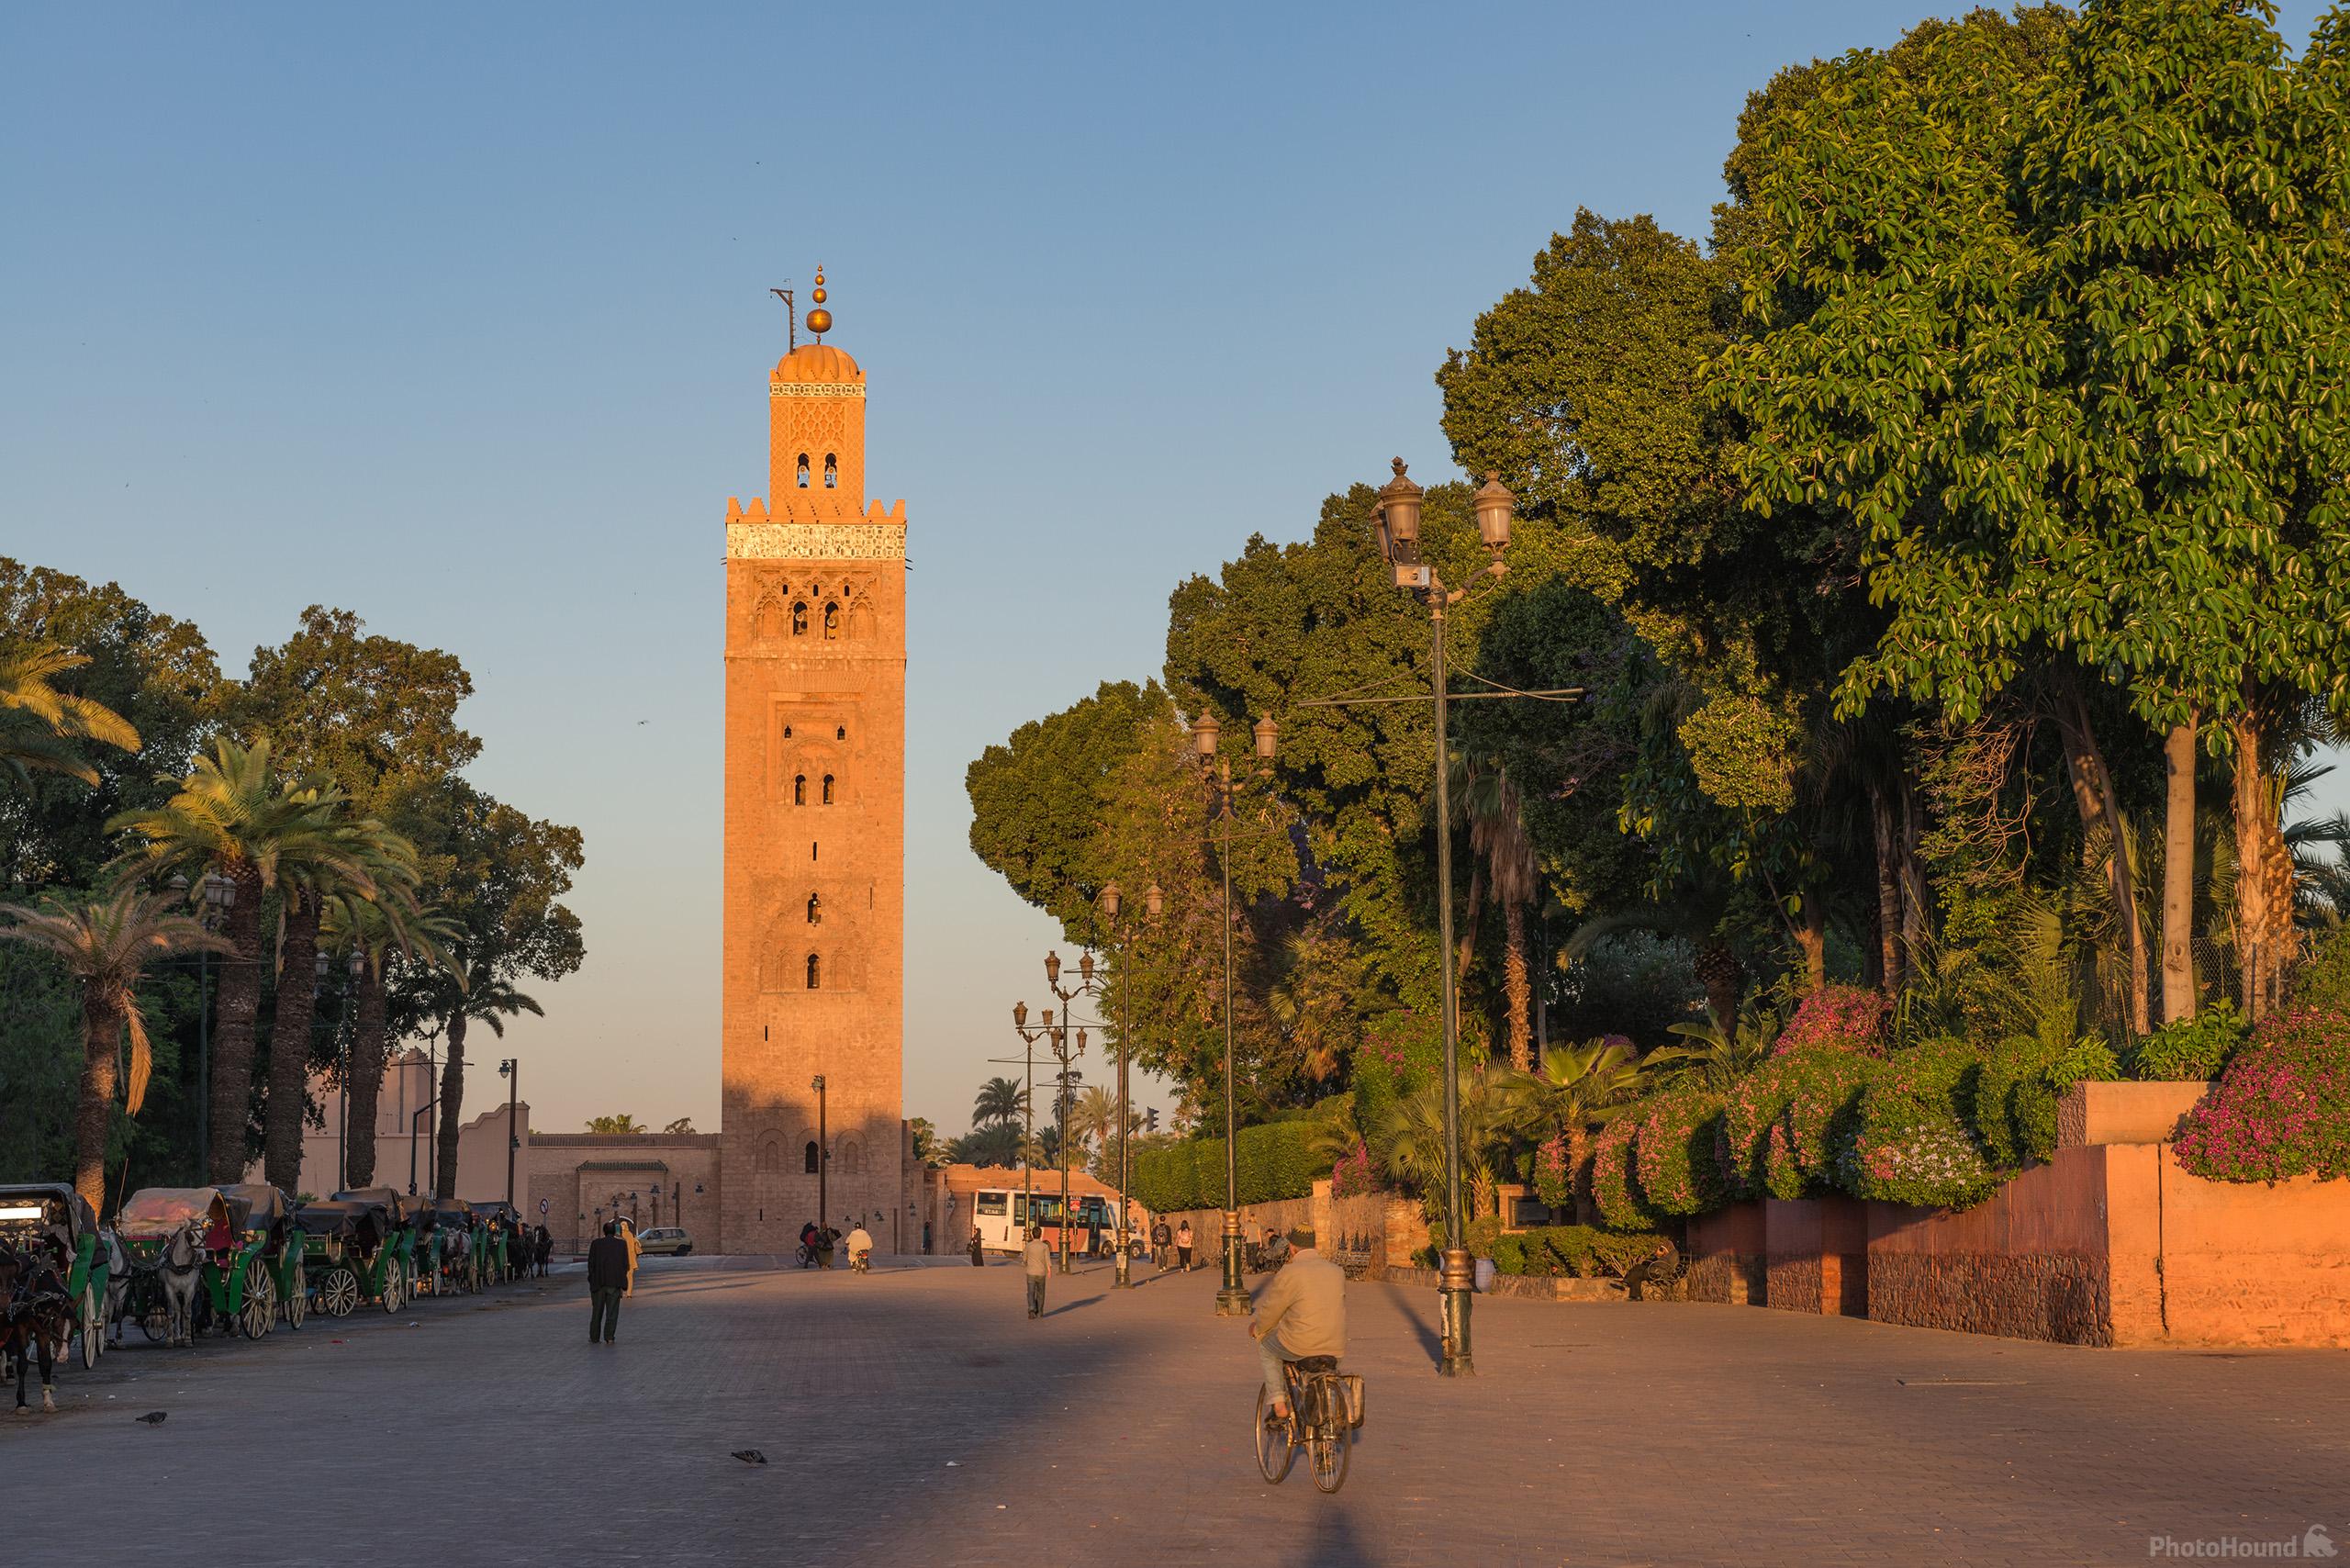 Image of Koutoubia Minaret by Luka Esenko